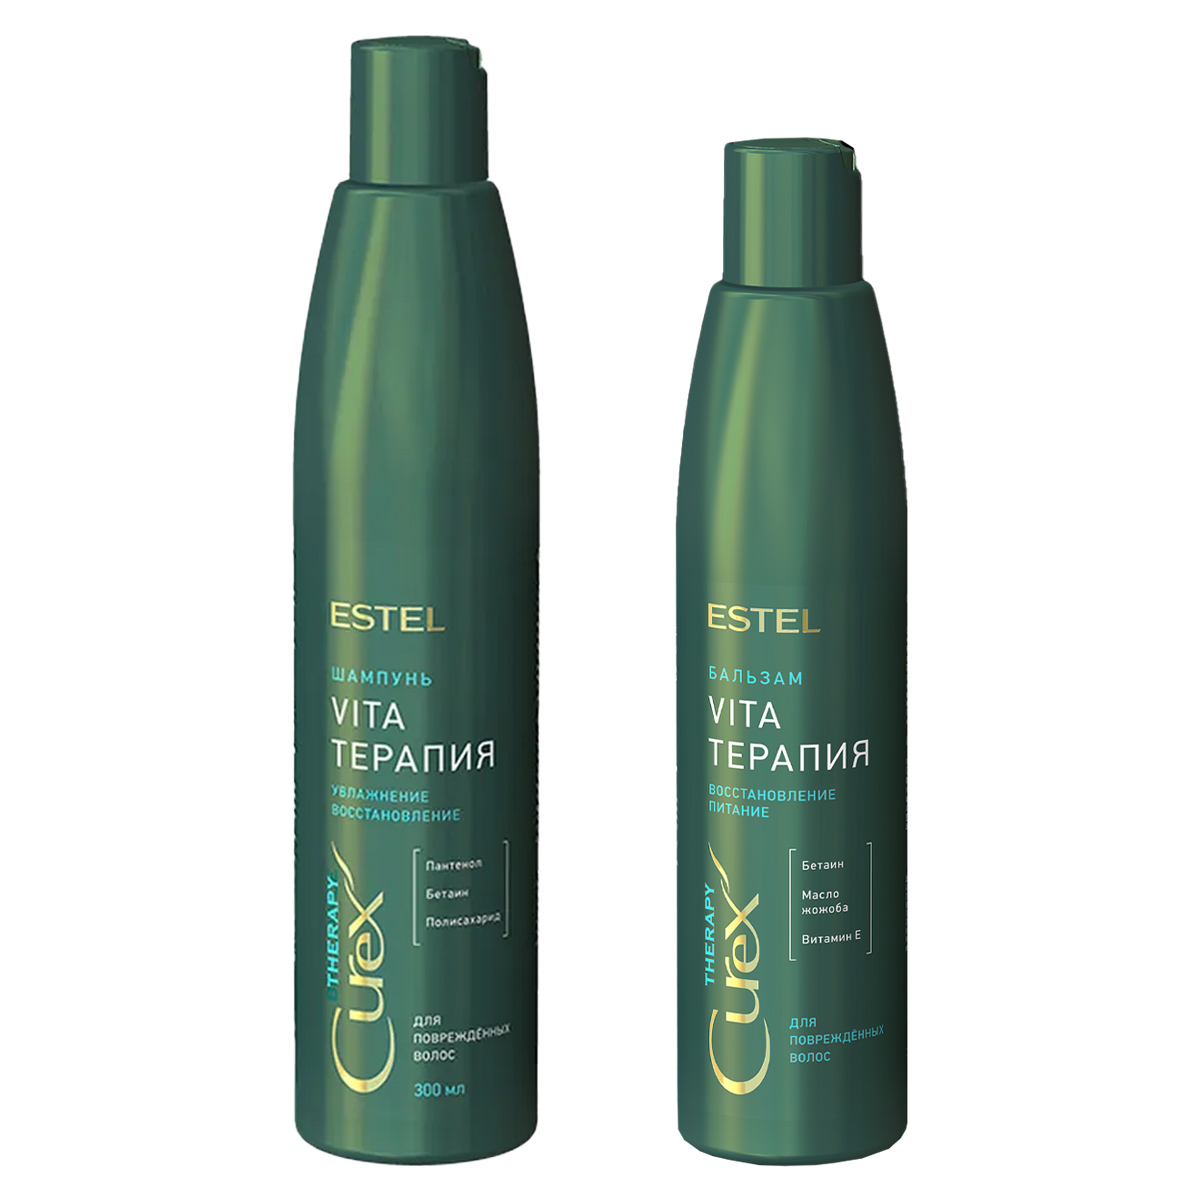 Estel Набор Vita-терапия для повреждённых волос: бальзам 250 мл + шампунь 300 мл (Estel, Curex) цена и фото